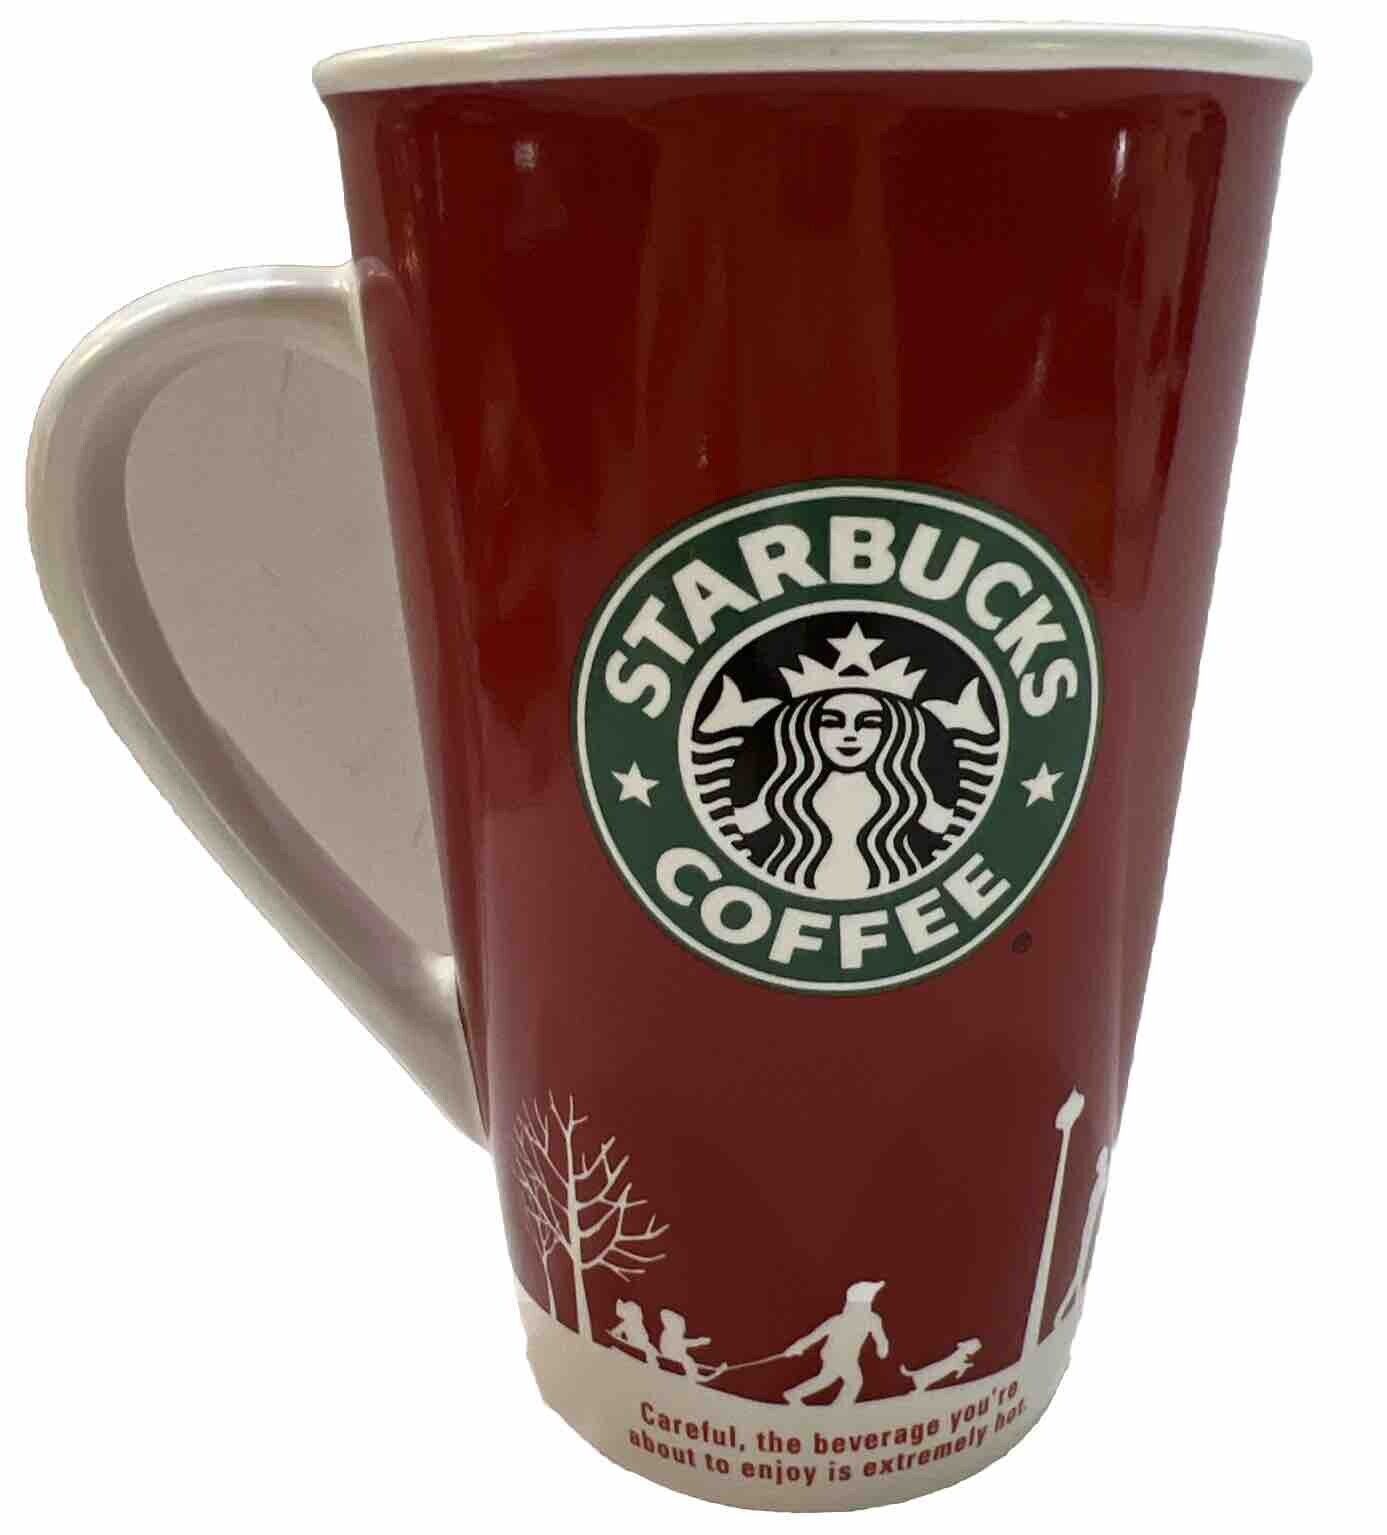 Rare Vintage Red Starbucks Christmas Mug - 2006 Glass